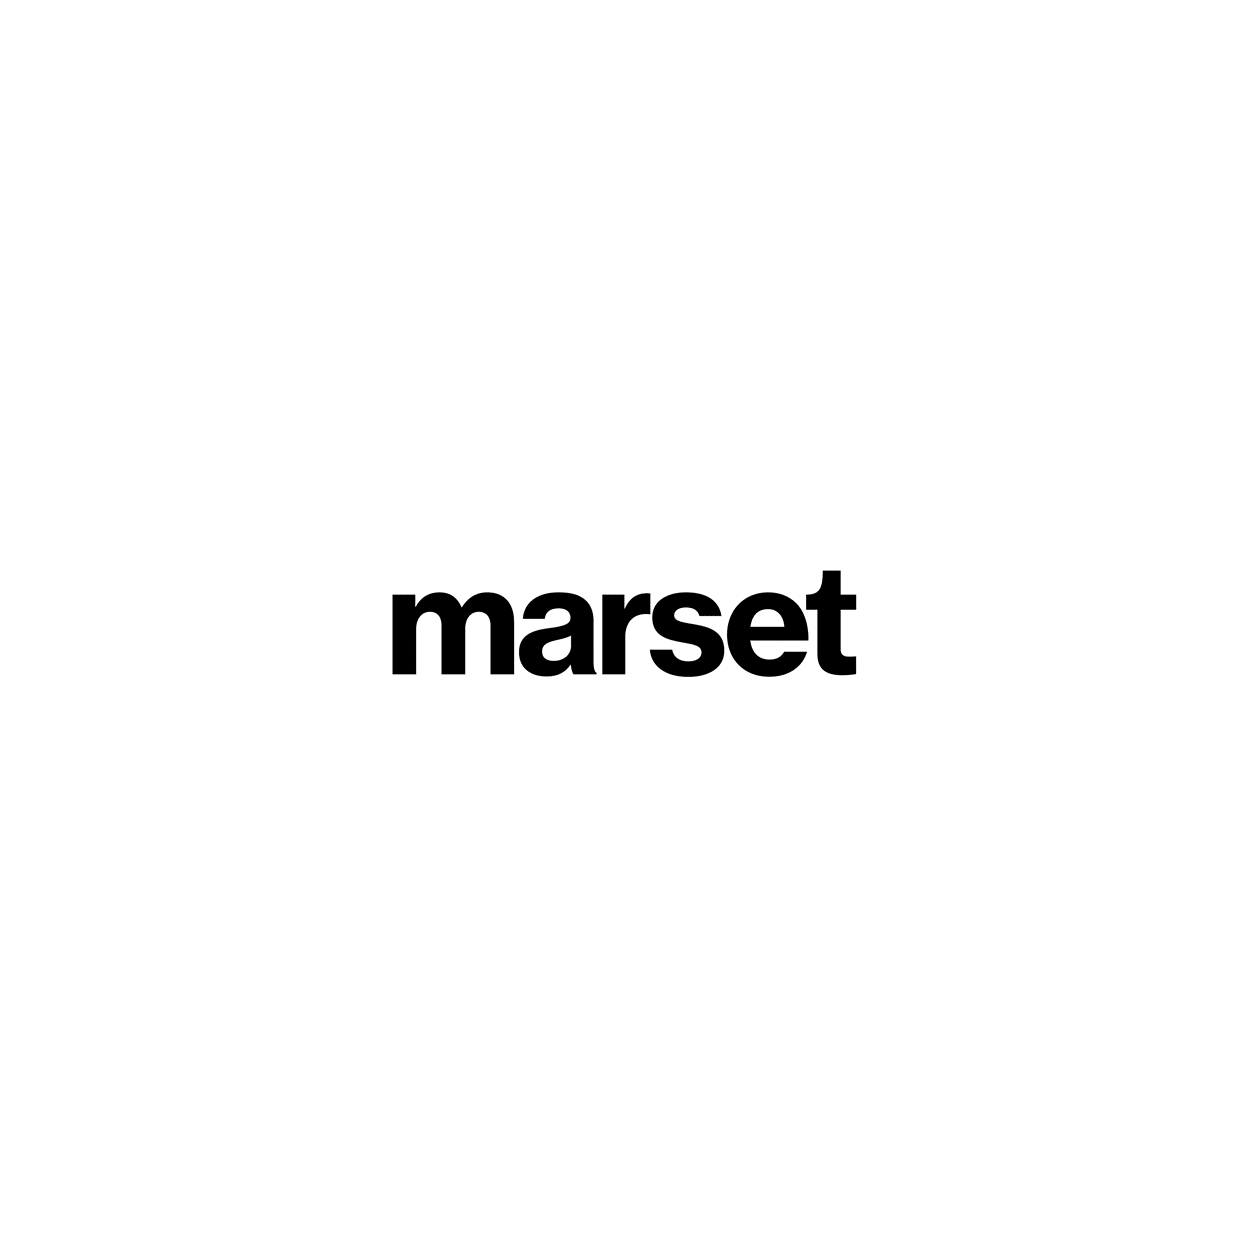 Marset - Objekte Licht & Raum GmbH in Hamburg